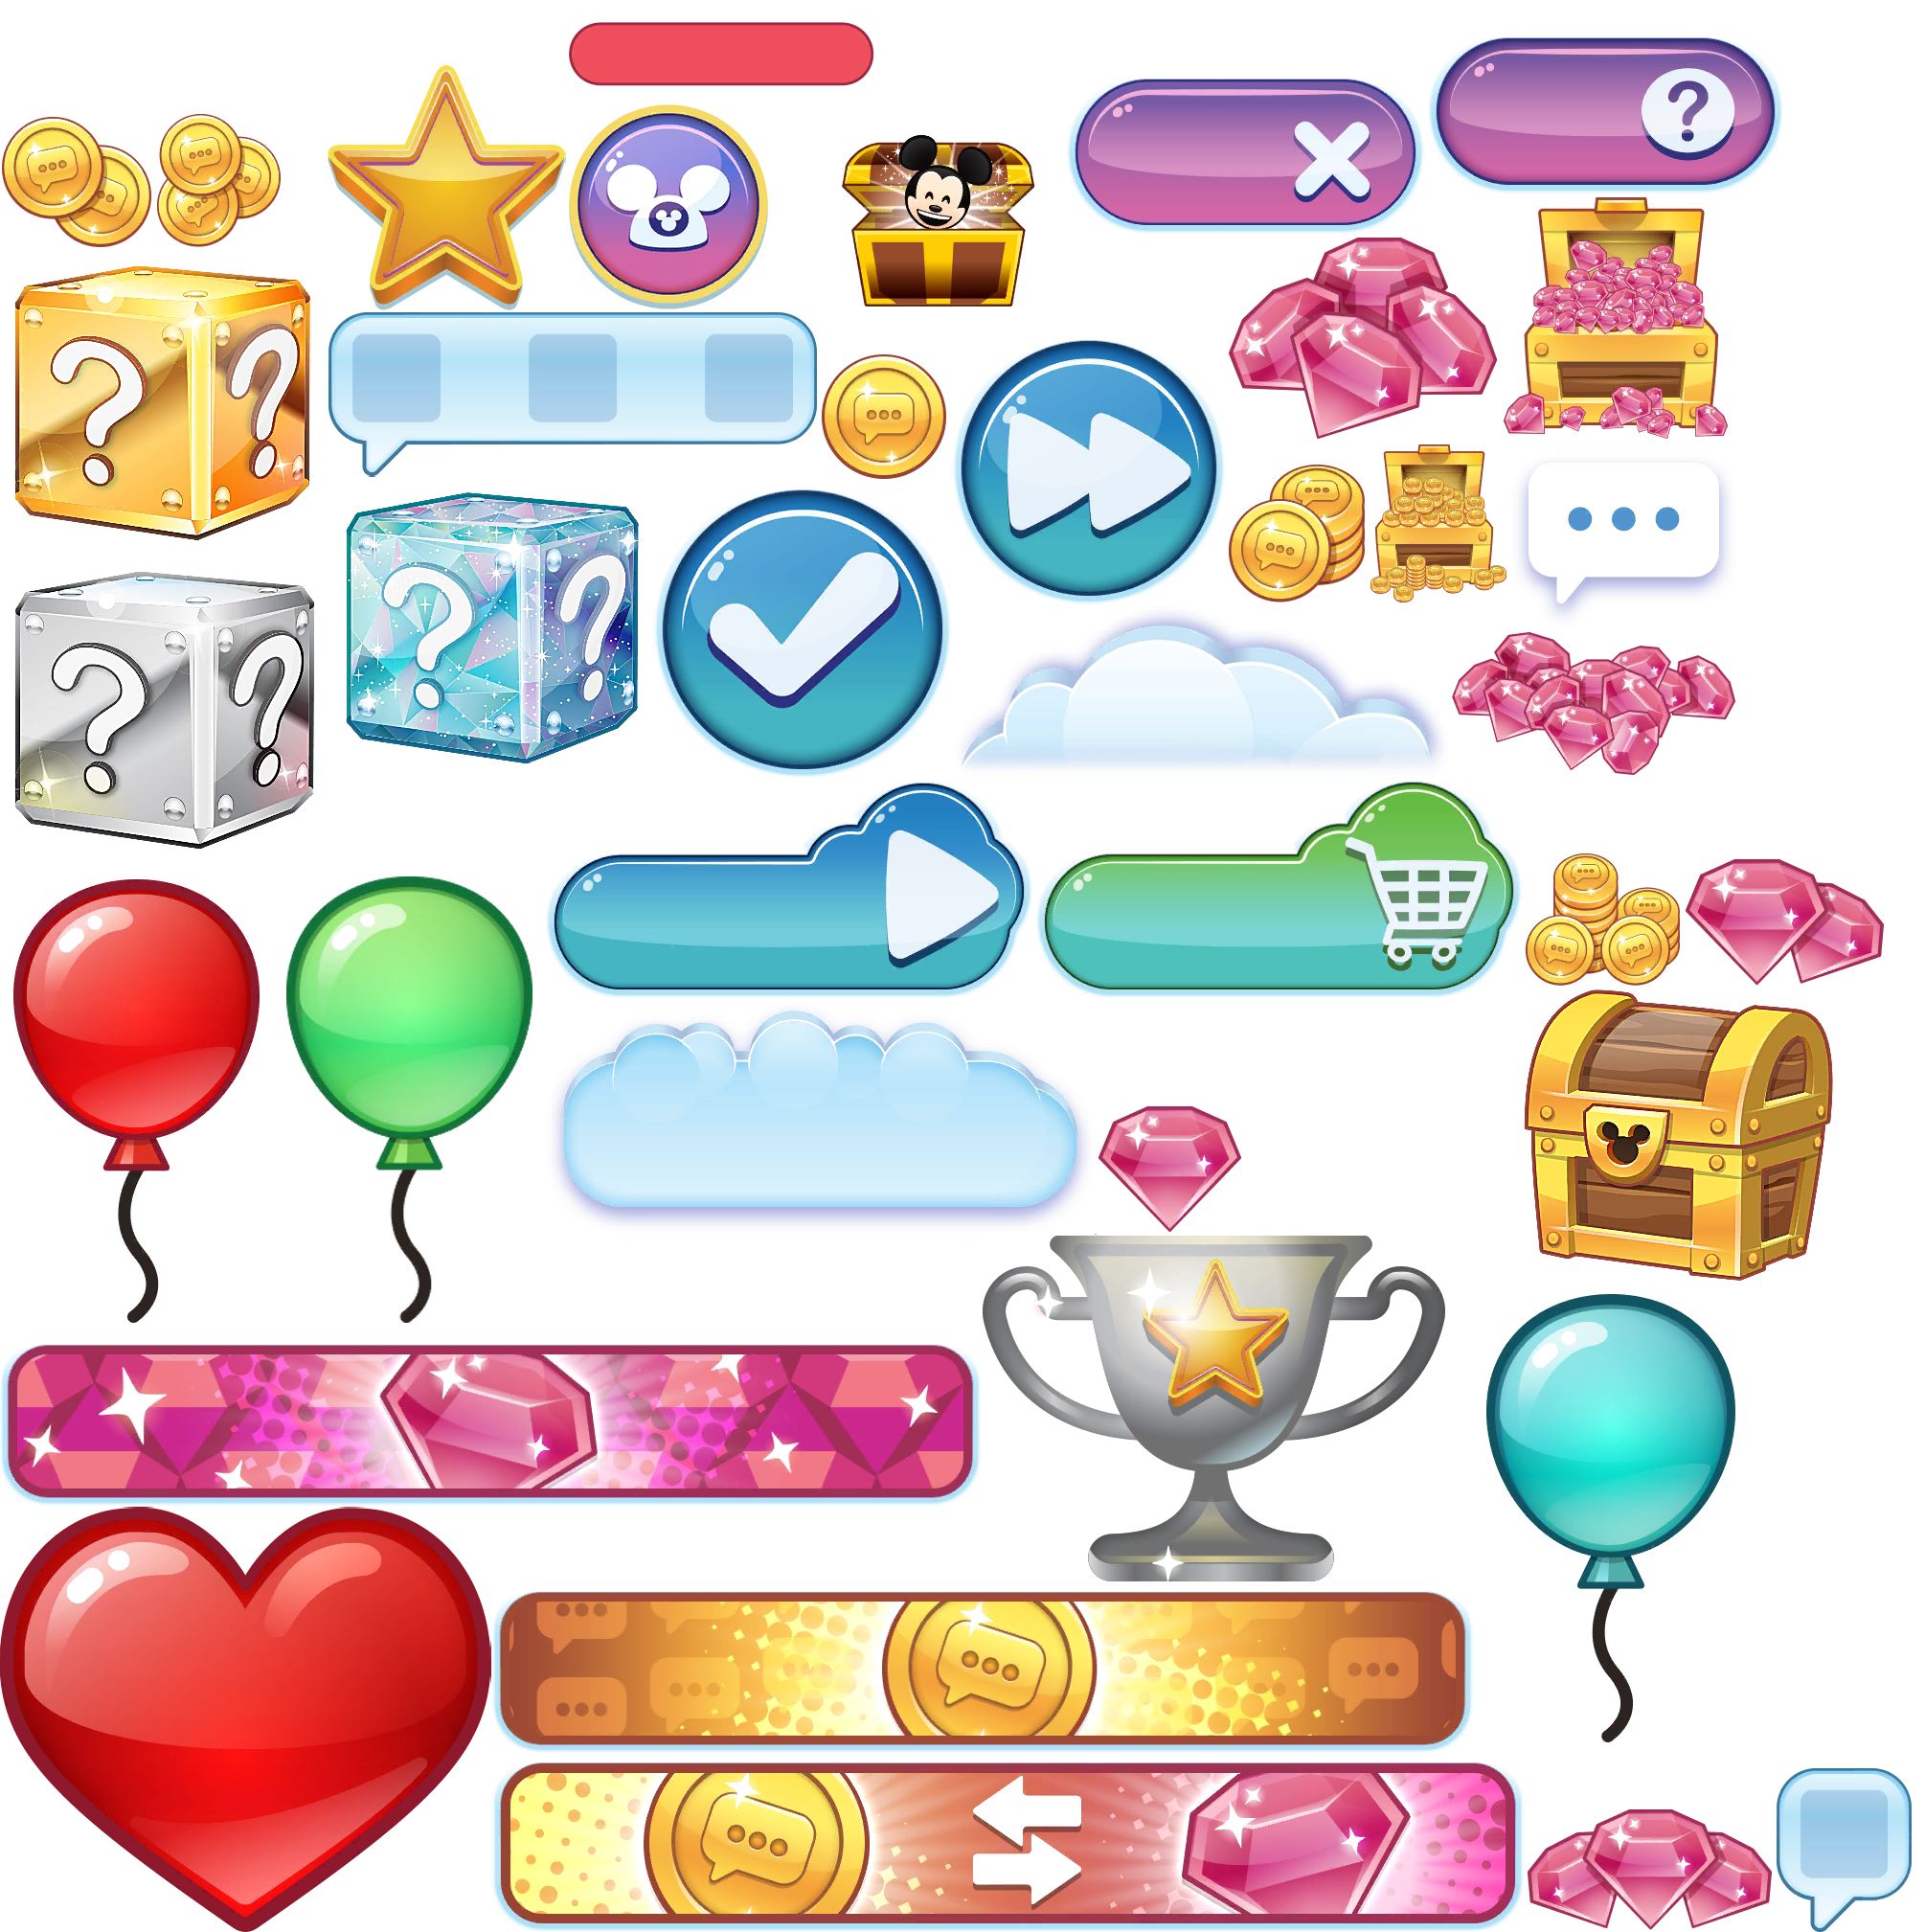 Disney Emoji Blitz - GUI (01/04)